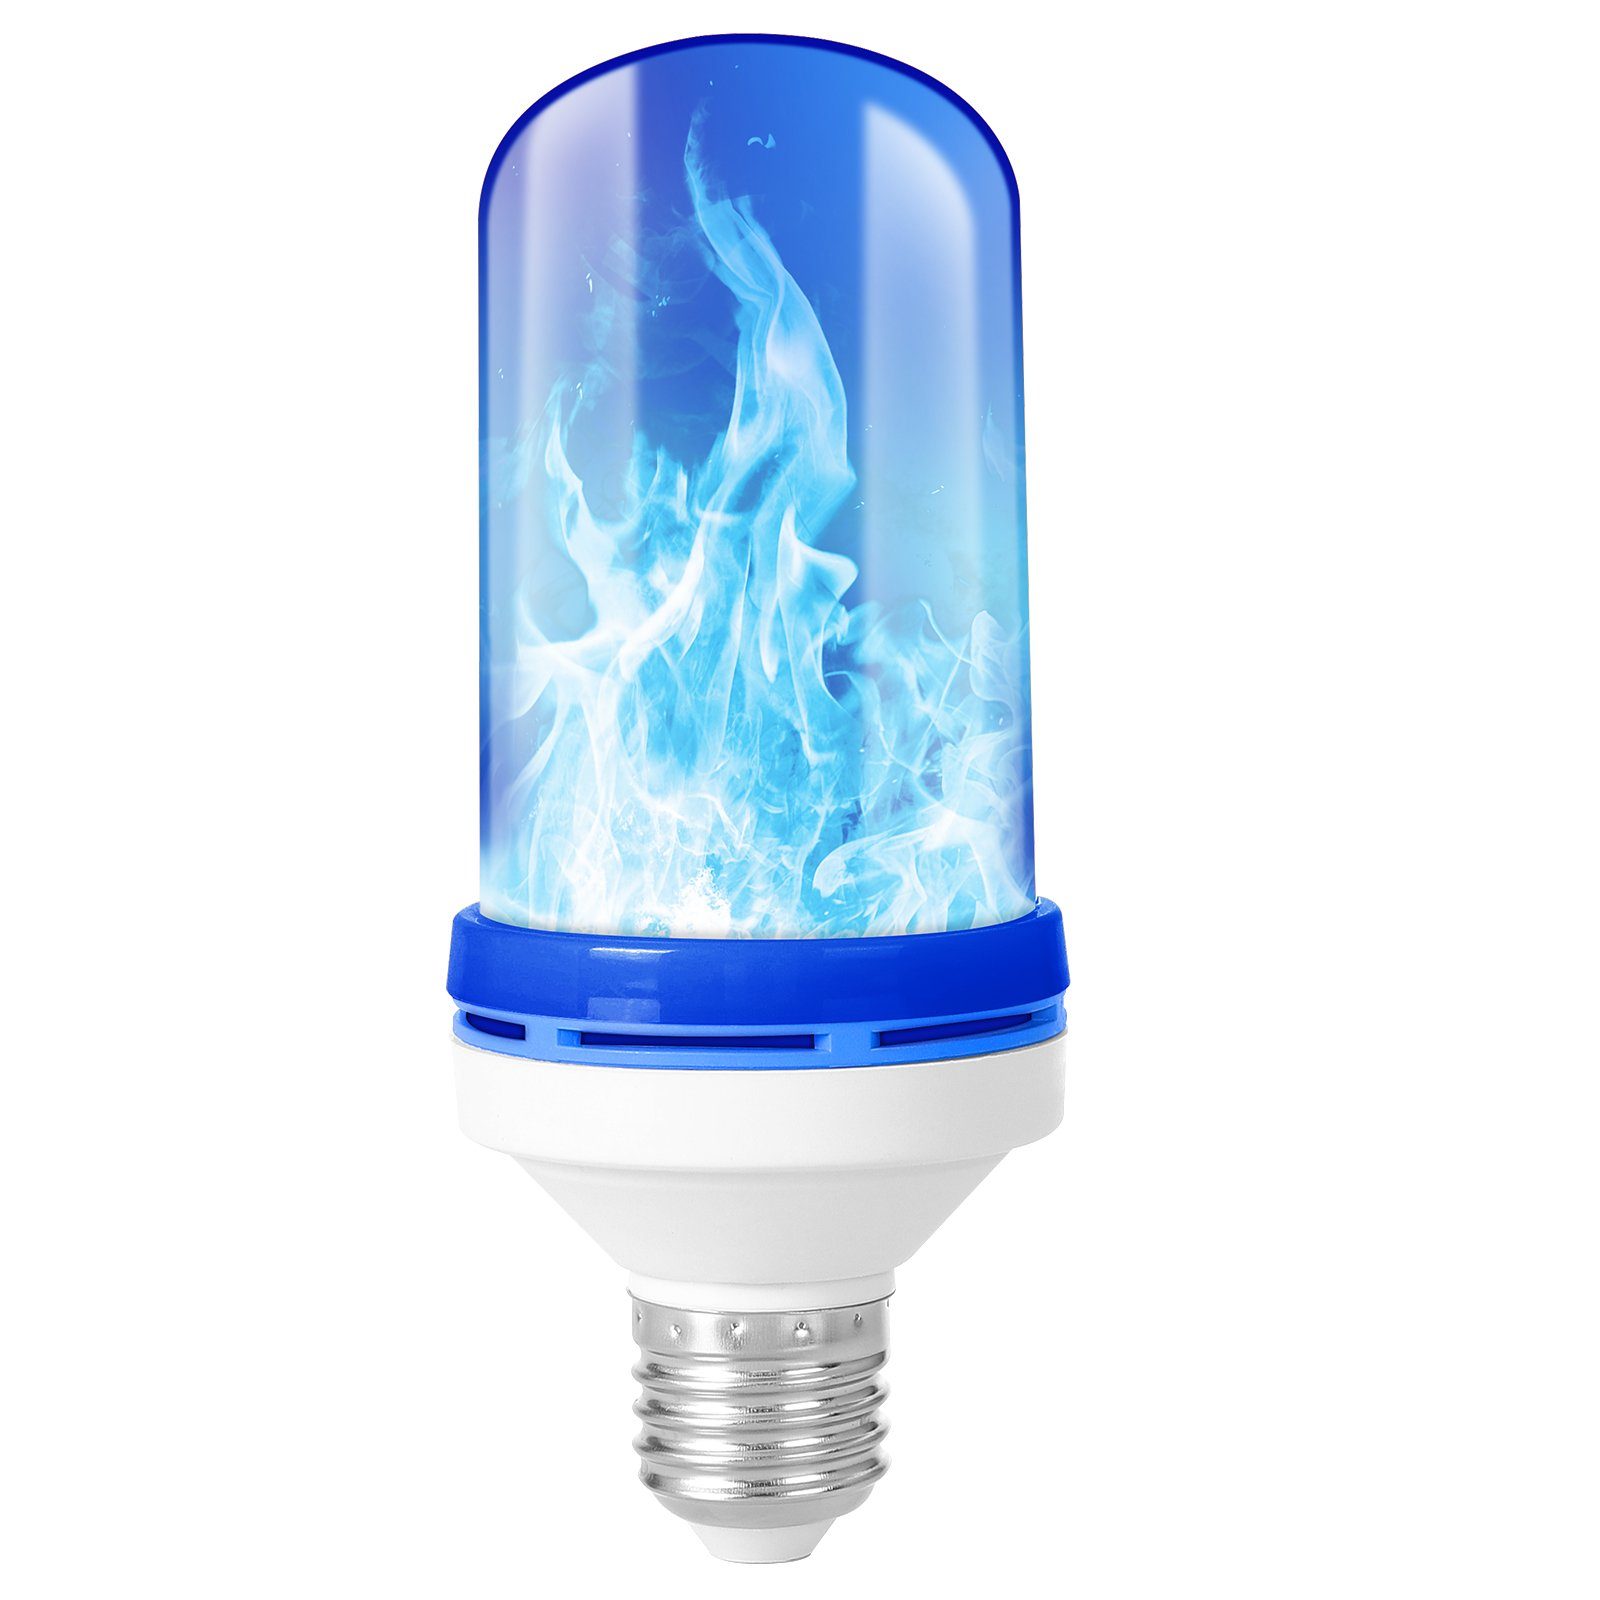 Rosnek LED Dekolicht E27, 4 Modi, Flammeneffekt, für Halloween Weihnachten, Regenbogen/Gelb/Blau